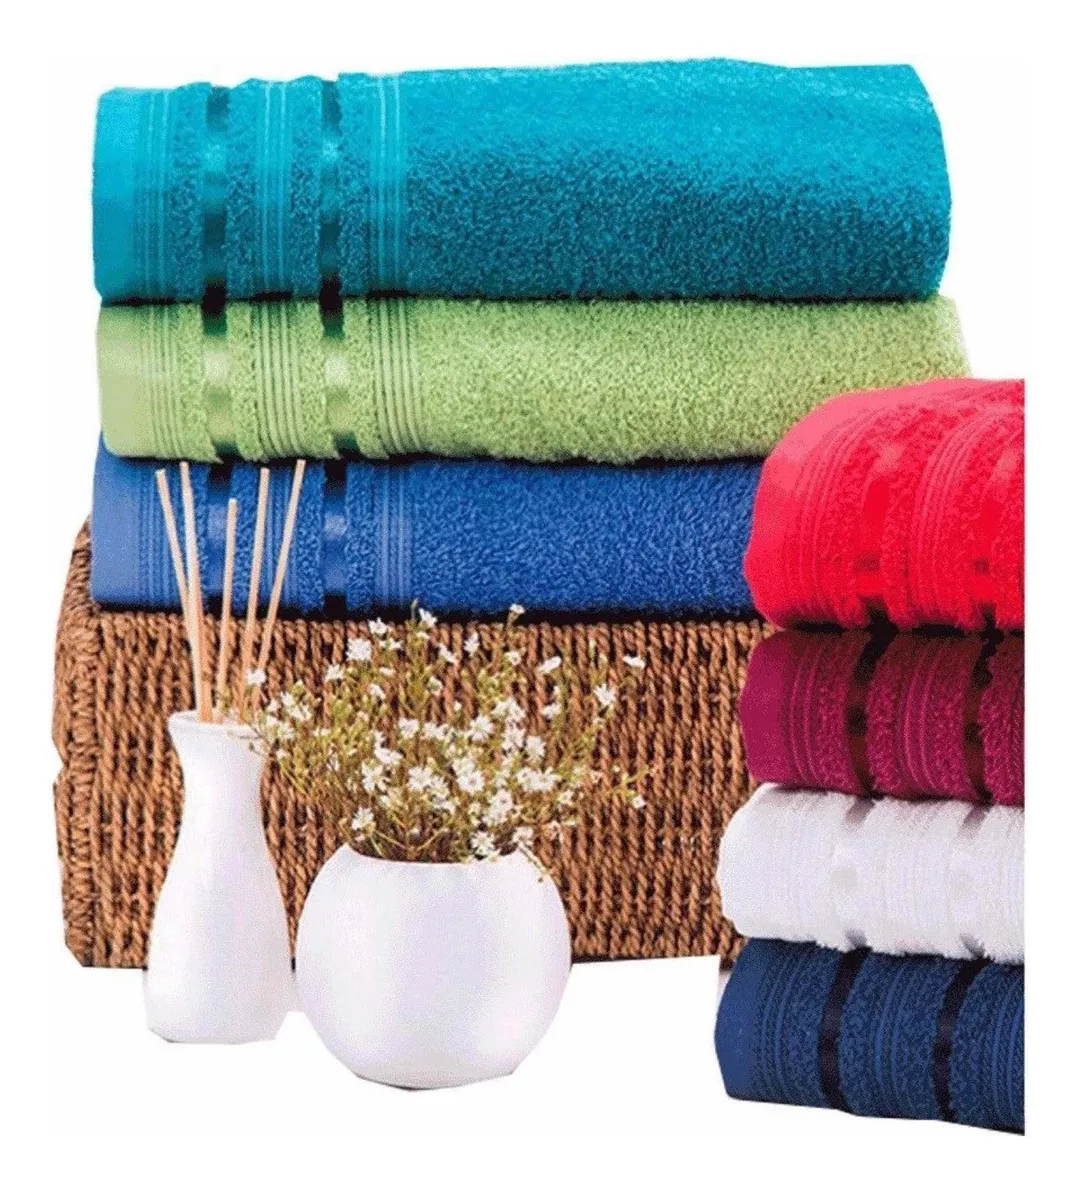 Tercera imagen para búsqueda de toallas de mano pequenas